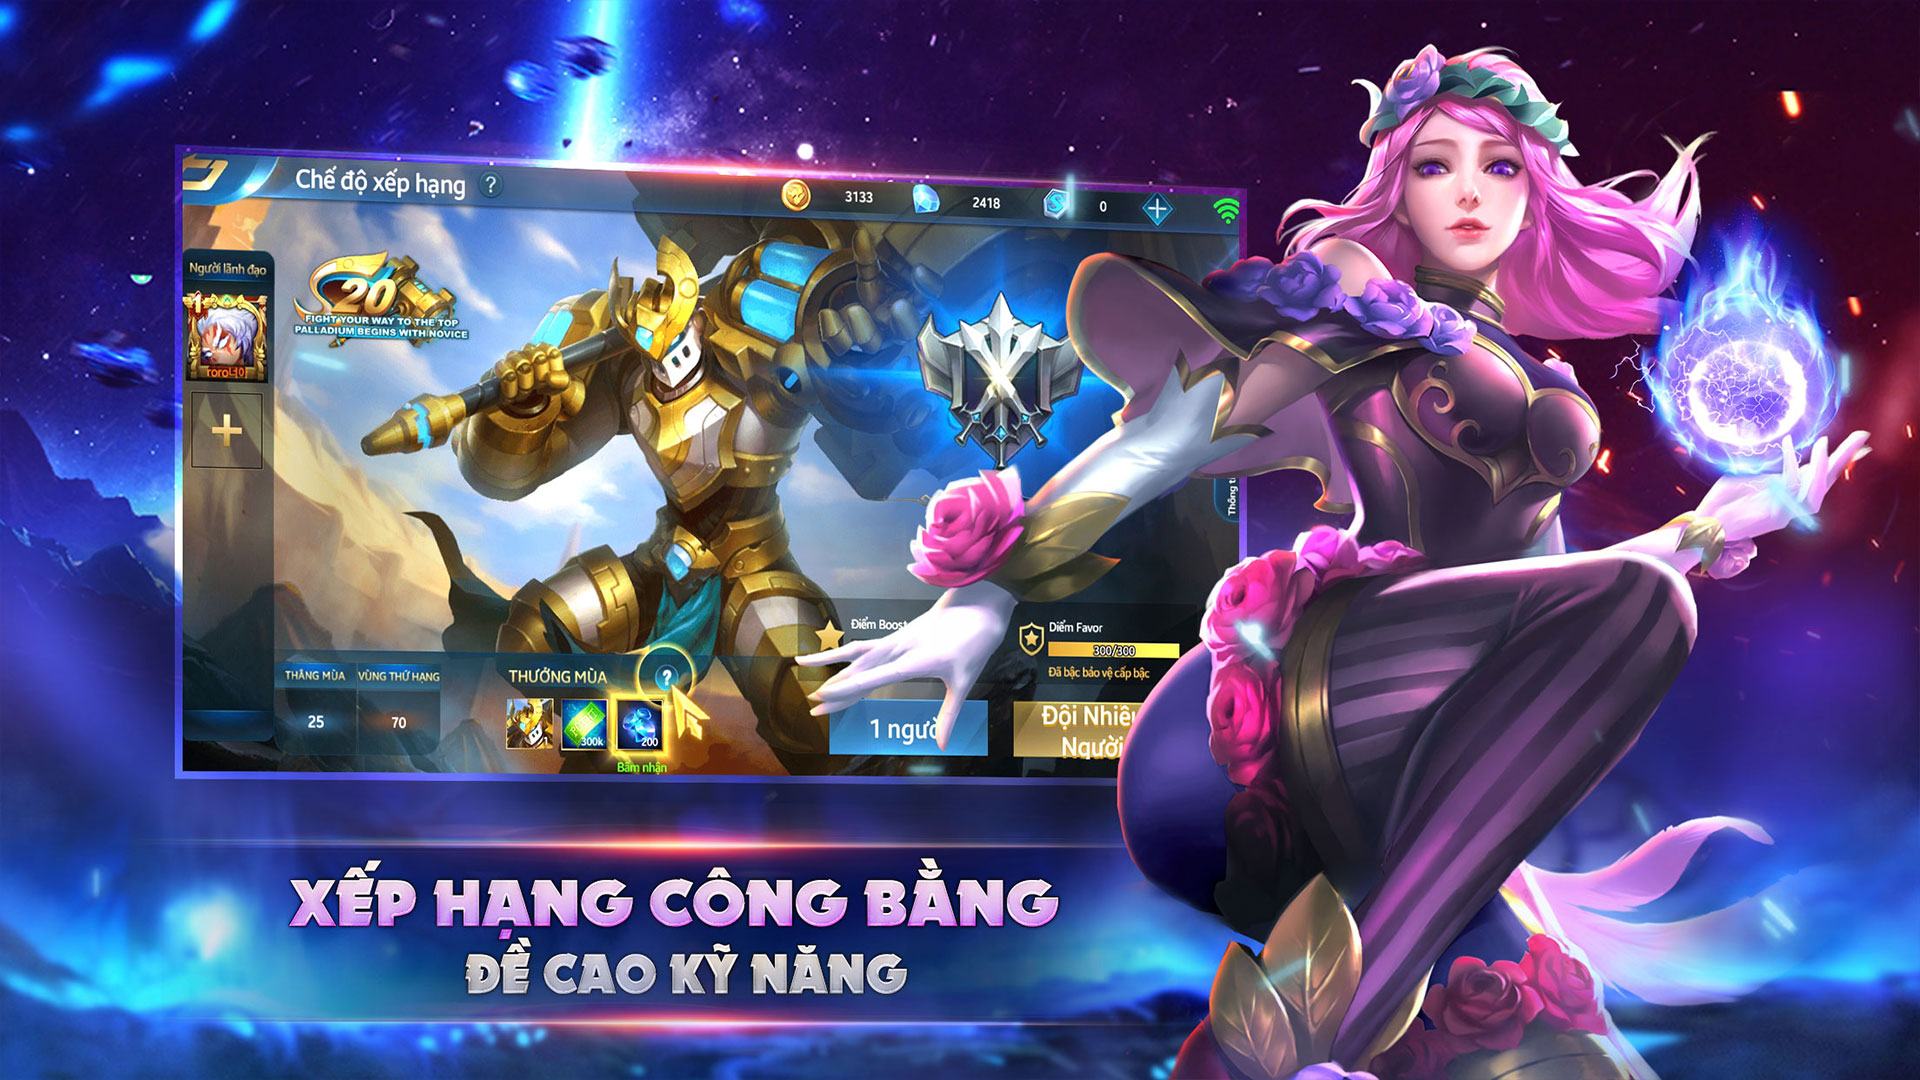 Loạn Chiến Mobile - Funzy: Một game MOBA mới sắp ra mắt tại Việt Nam